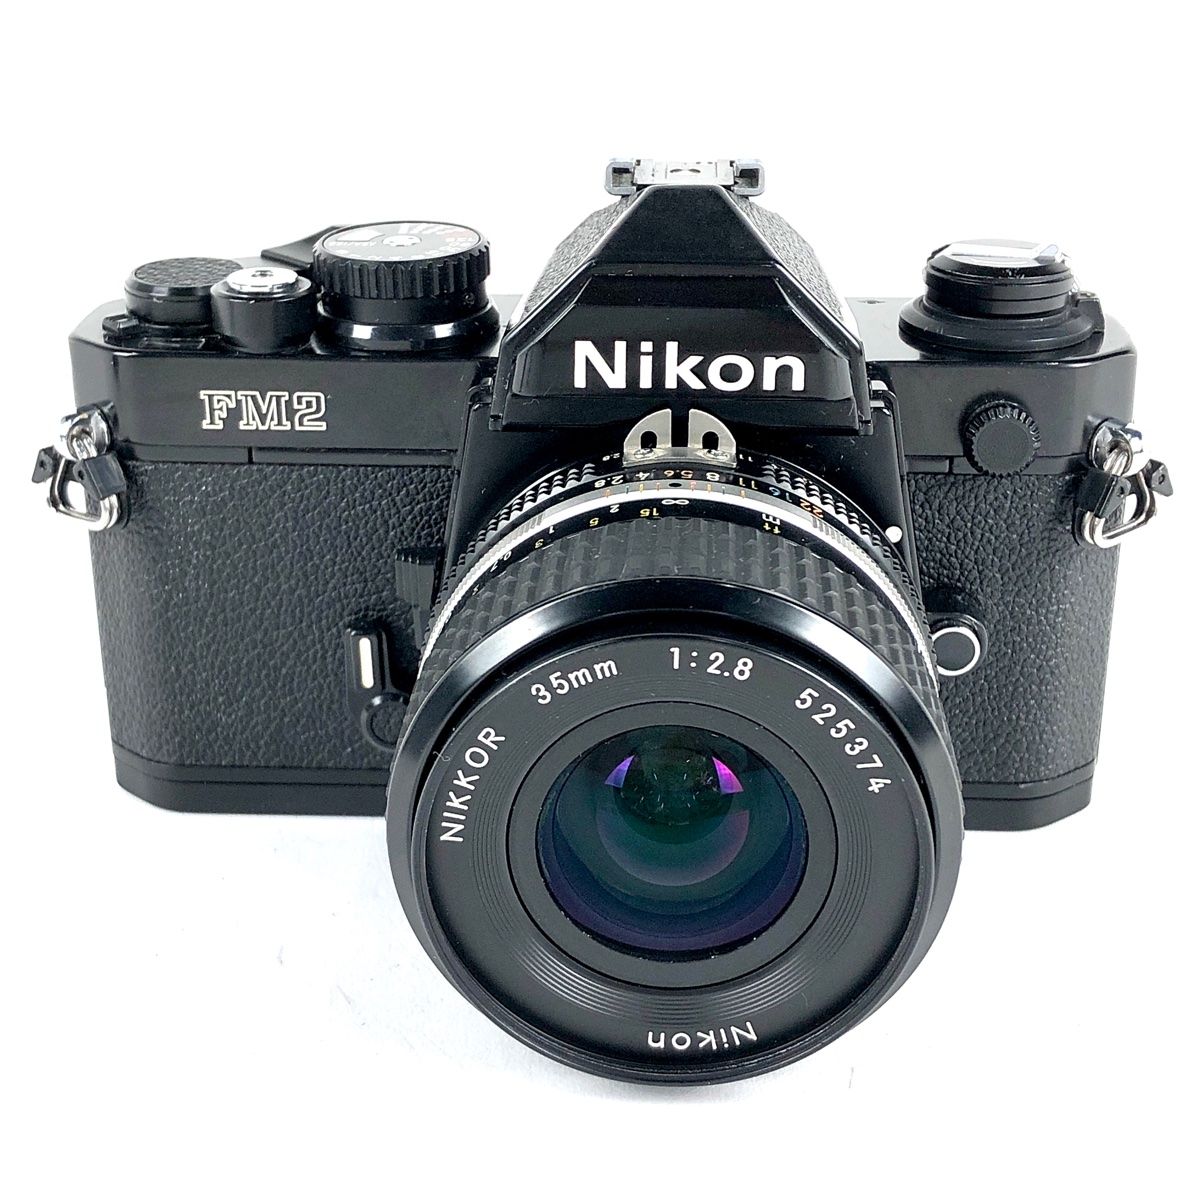 ニコン Nikon NEW FM2 ブラック + Ai-S NIKKOR 35mm F2.8 フィルム